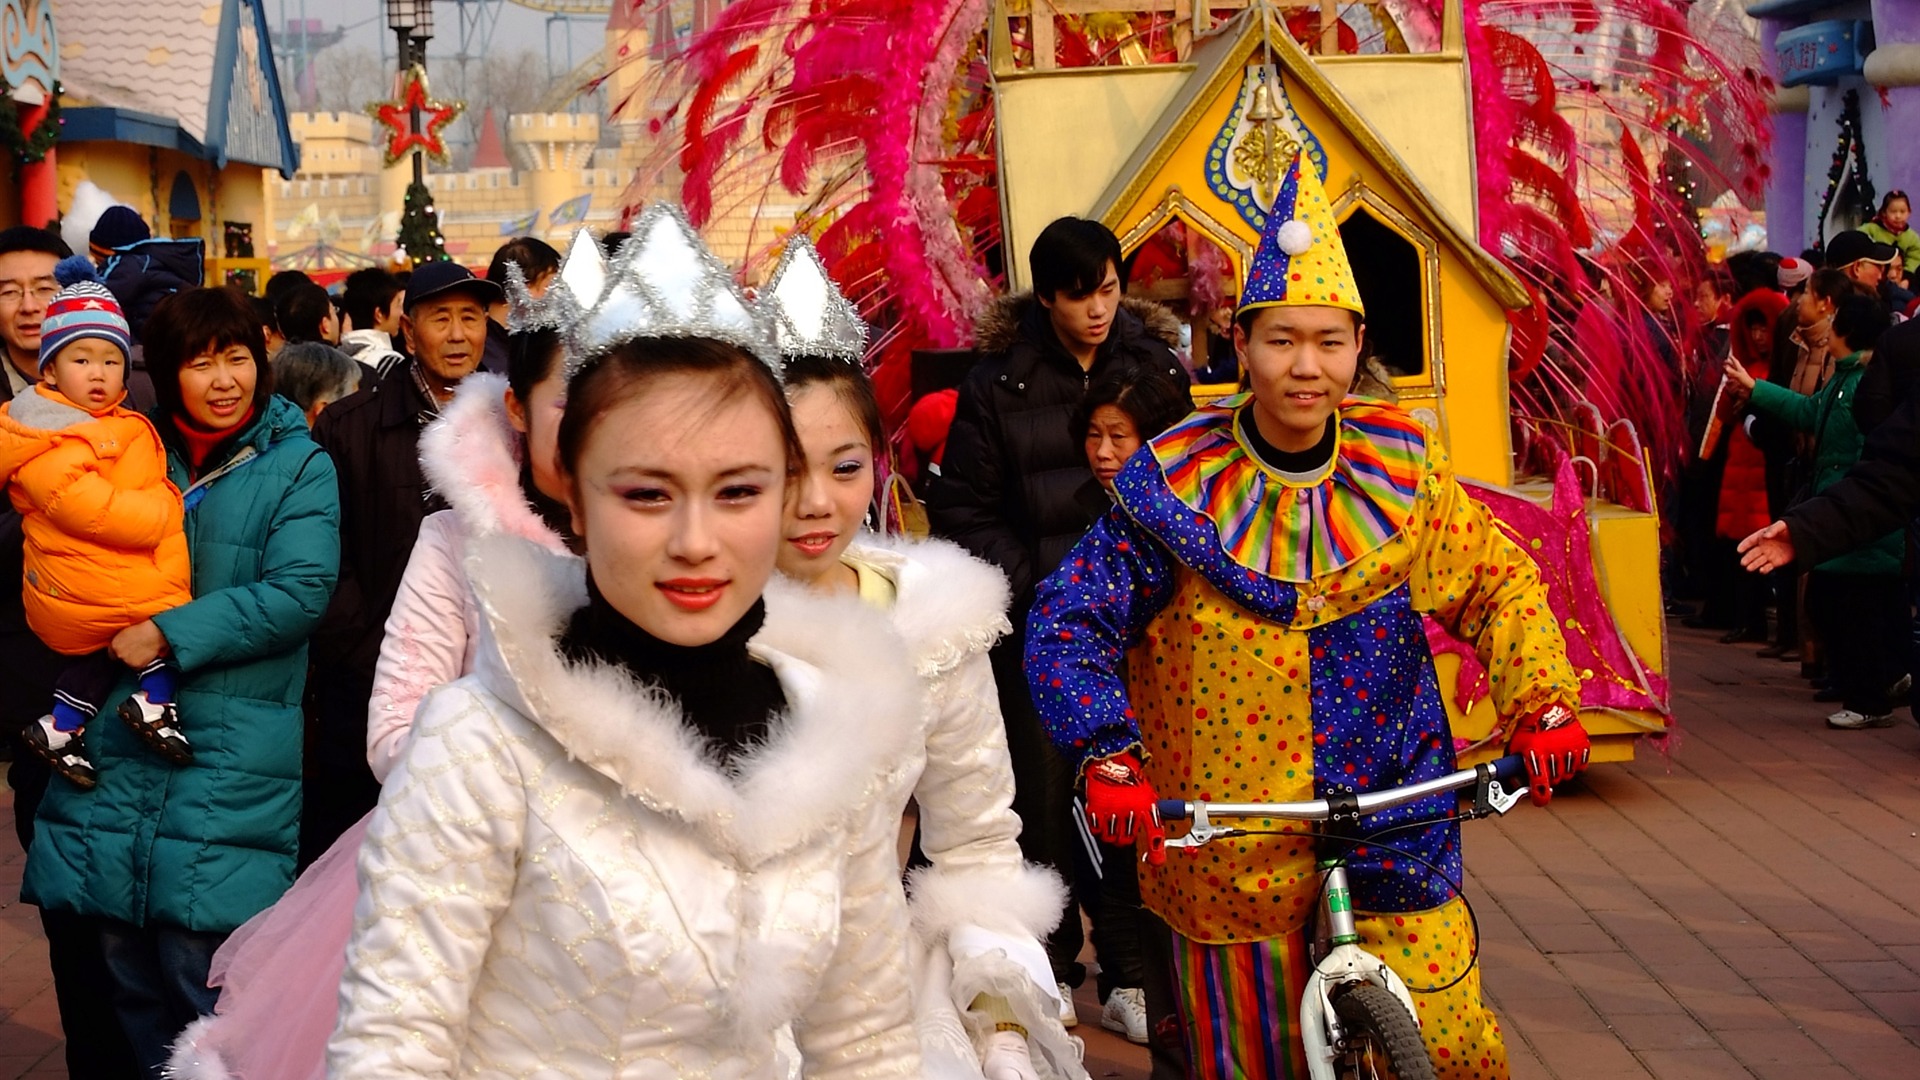 Happy Čínský Nový rok v Pekingu Yang Temple (prutu práce) #1 - 1920x1080